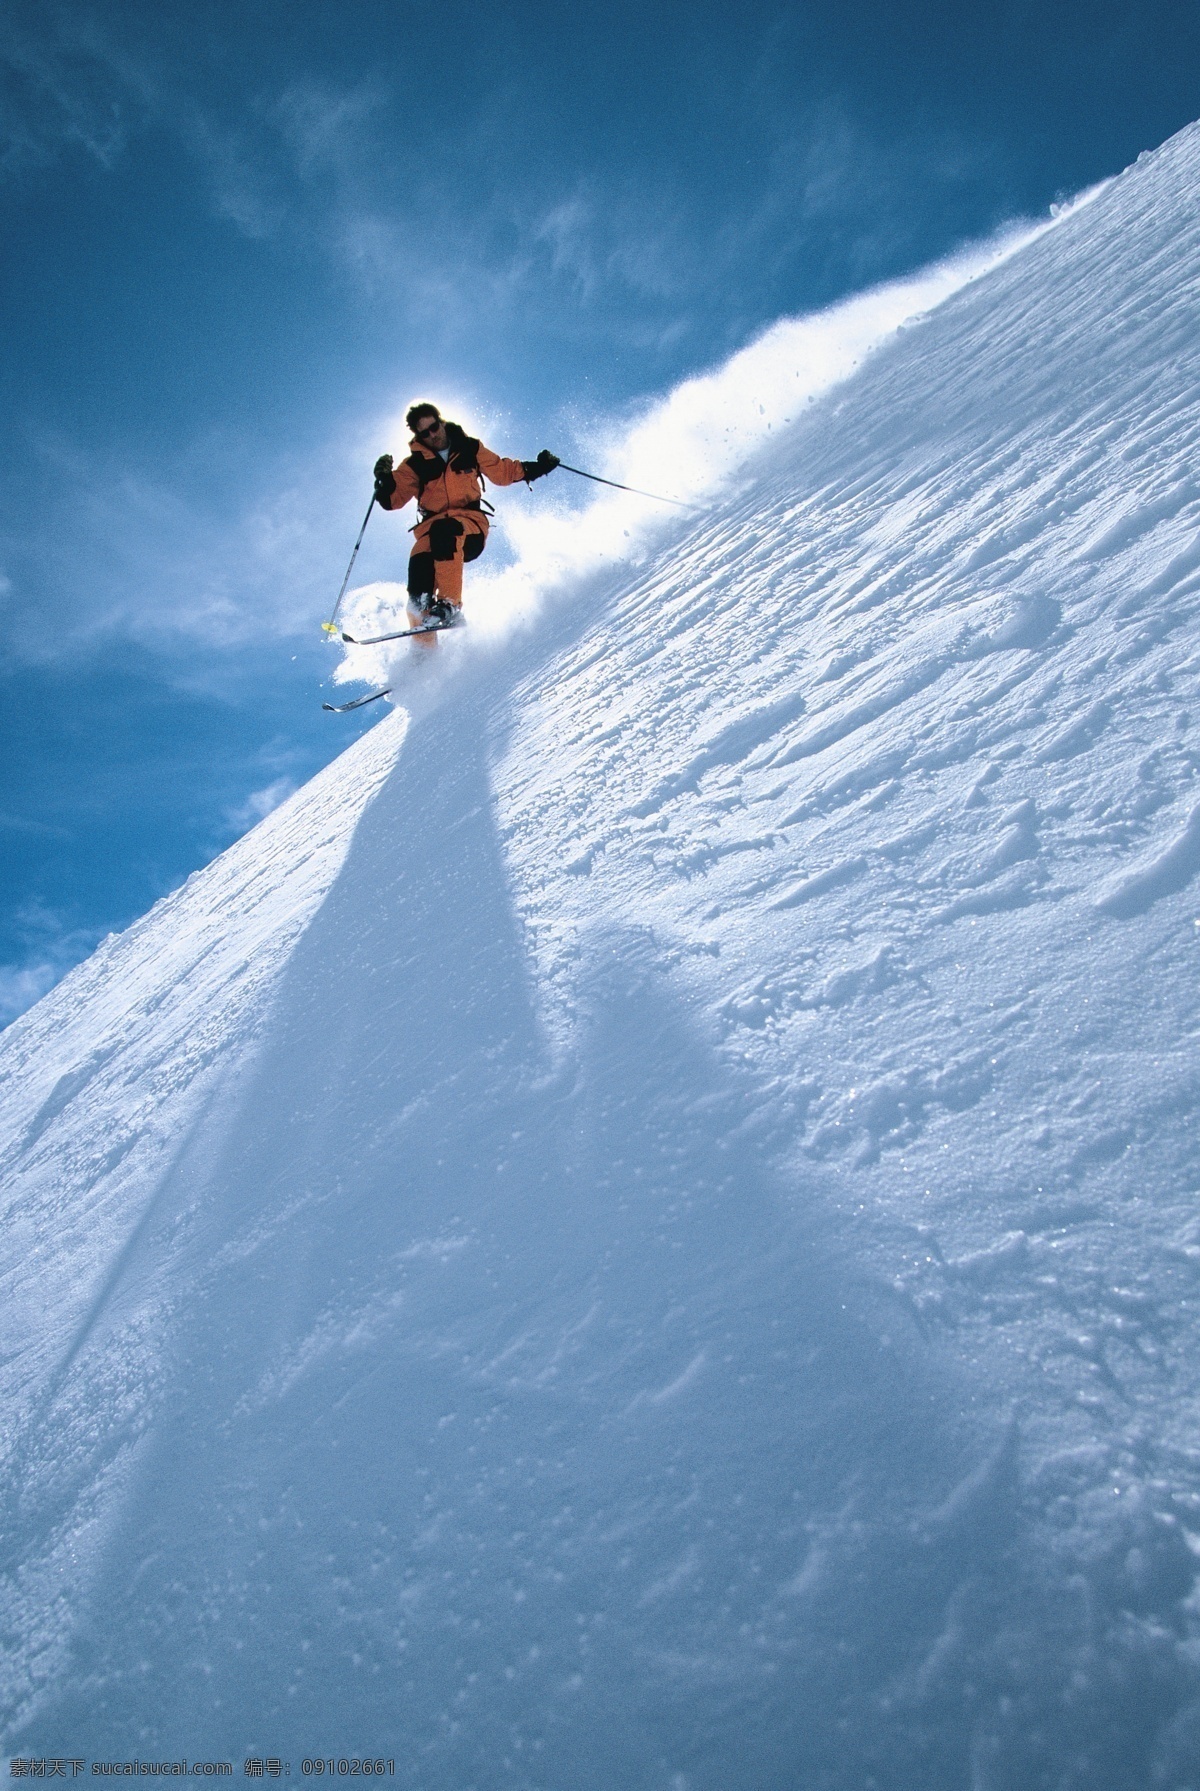 飞速 下滑 滑雪 运动员 冬天 雪地运动 划雪运动 极限运动 体育项目 运动图片 生活百科 风景 雪景 雪山风光 摄影图片 高清图片 滑雪图片